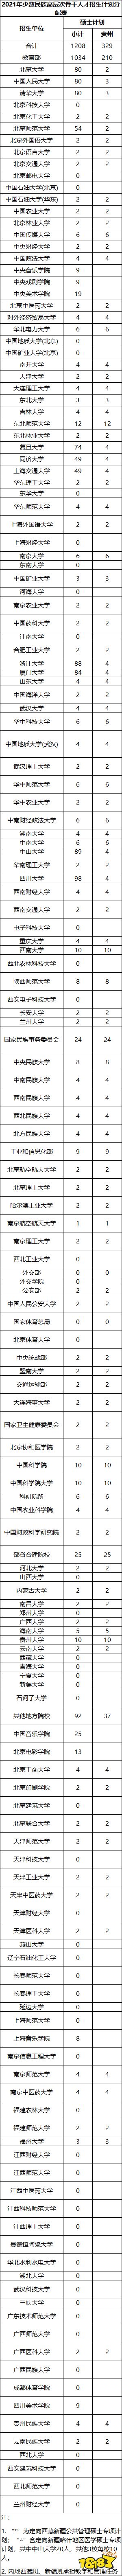 贵州少干计划研究生名额分配 贵州少数民族骨干考研名额表